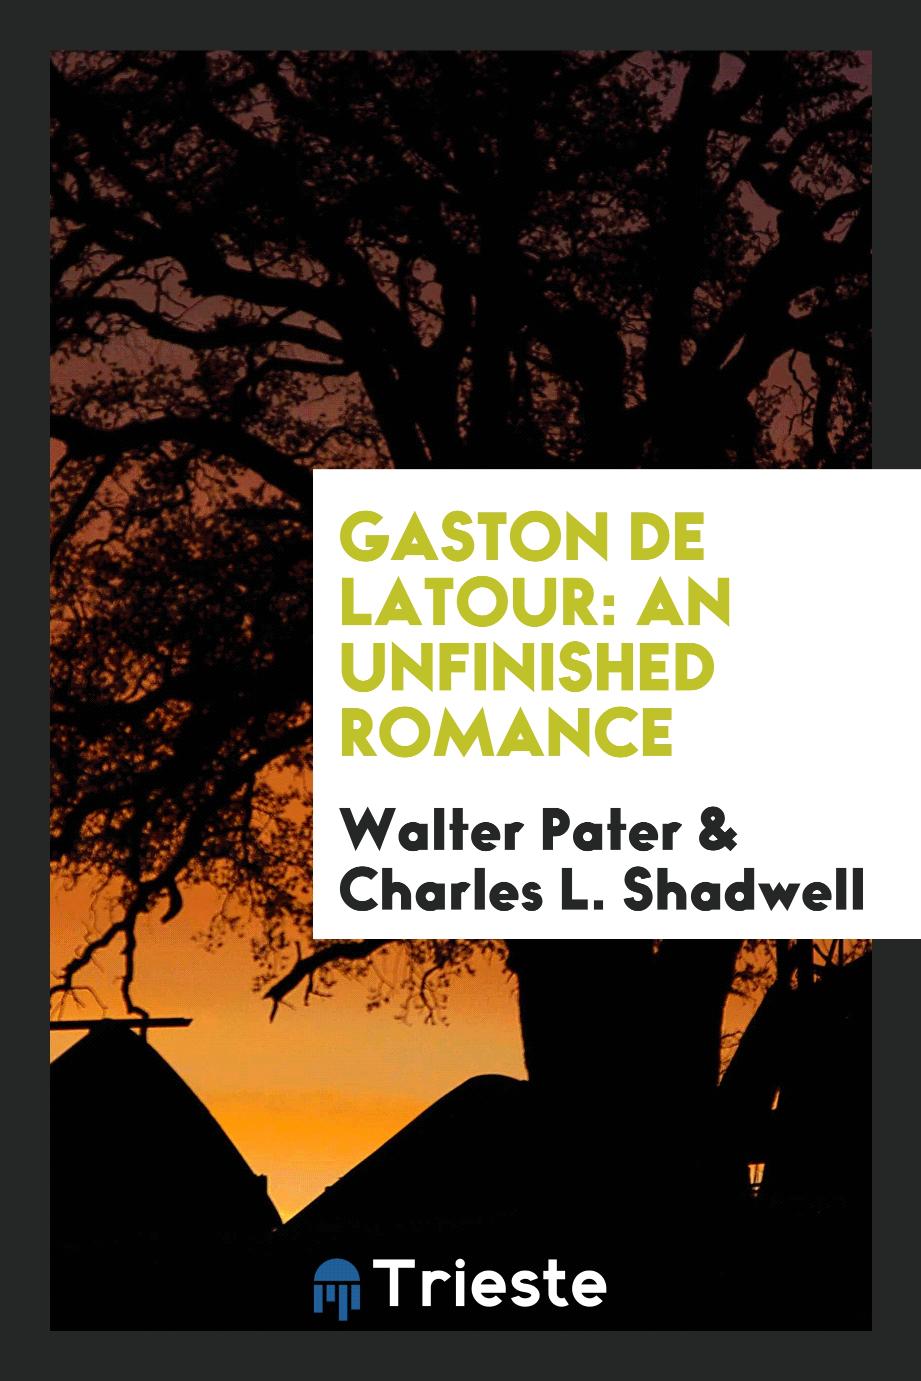 Gaston de Latour: An Unfinished Romance